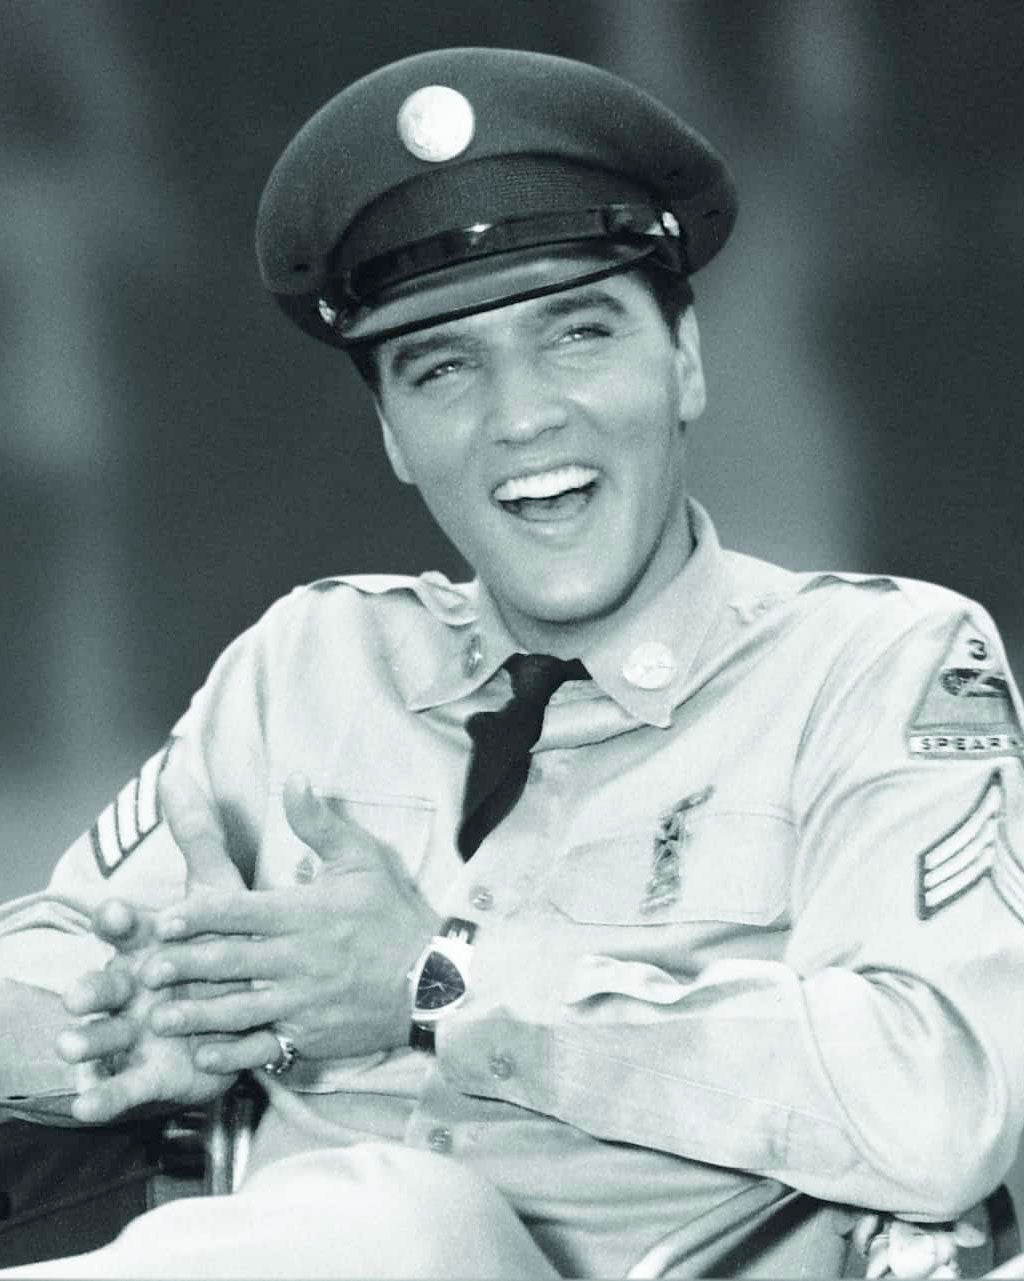 What Watch Did Elvis Wear?